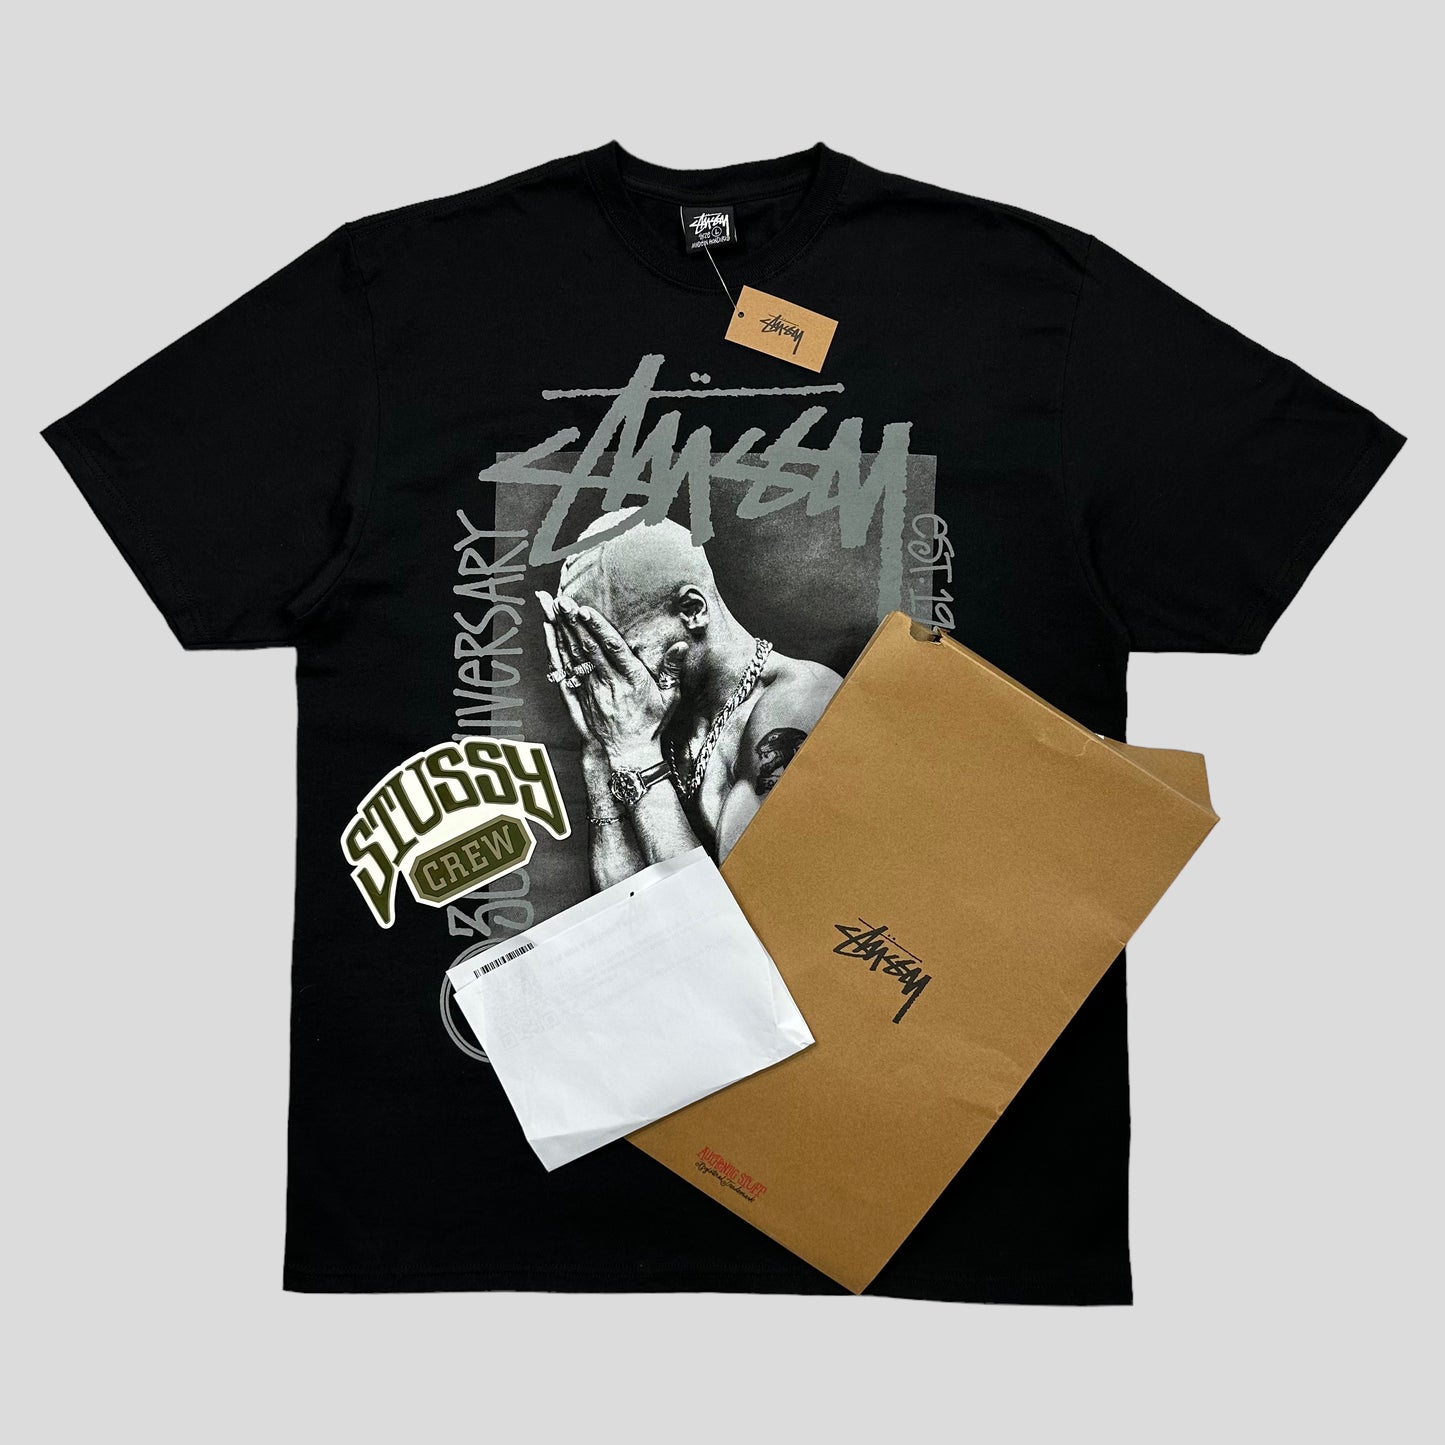 Stussy x Metalheadz 30th Anni T-shirt DSWT + Sticker etc - L